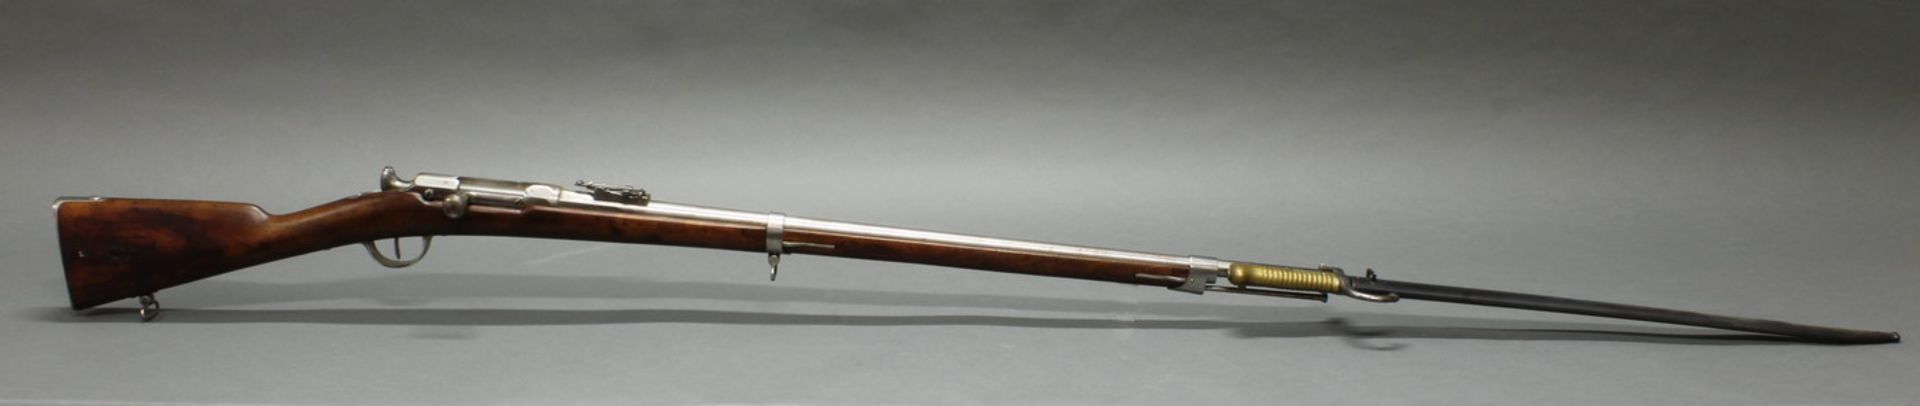 Chassepot-Gewehr, mit Jatagan-Bajonett in Metallscheide, Frankreich, St. Etienne, 1866, - Bild 2 aus 7